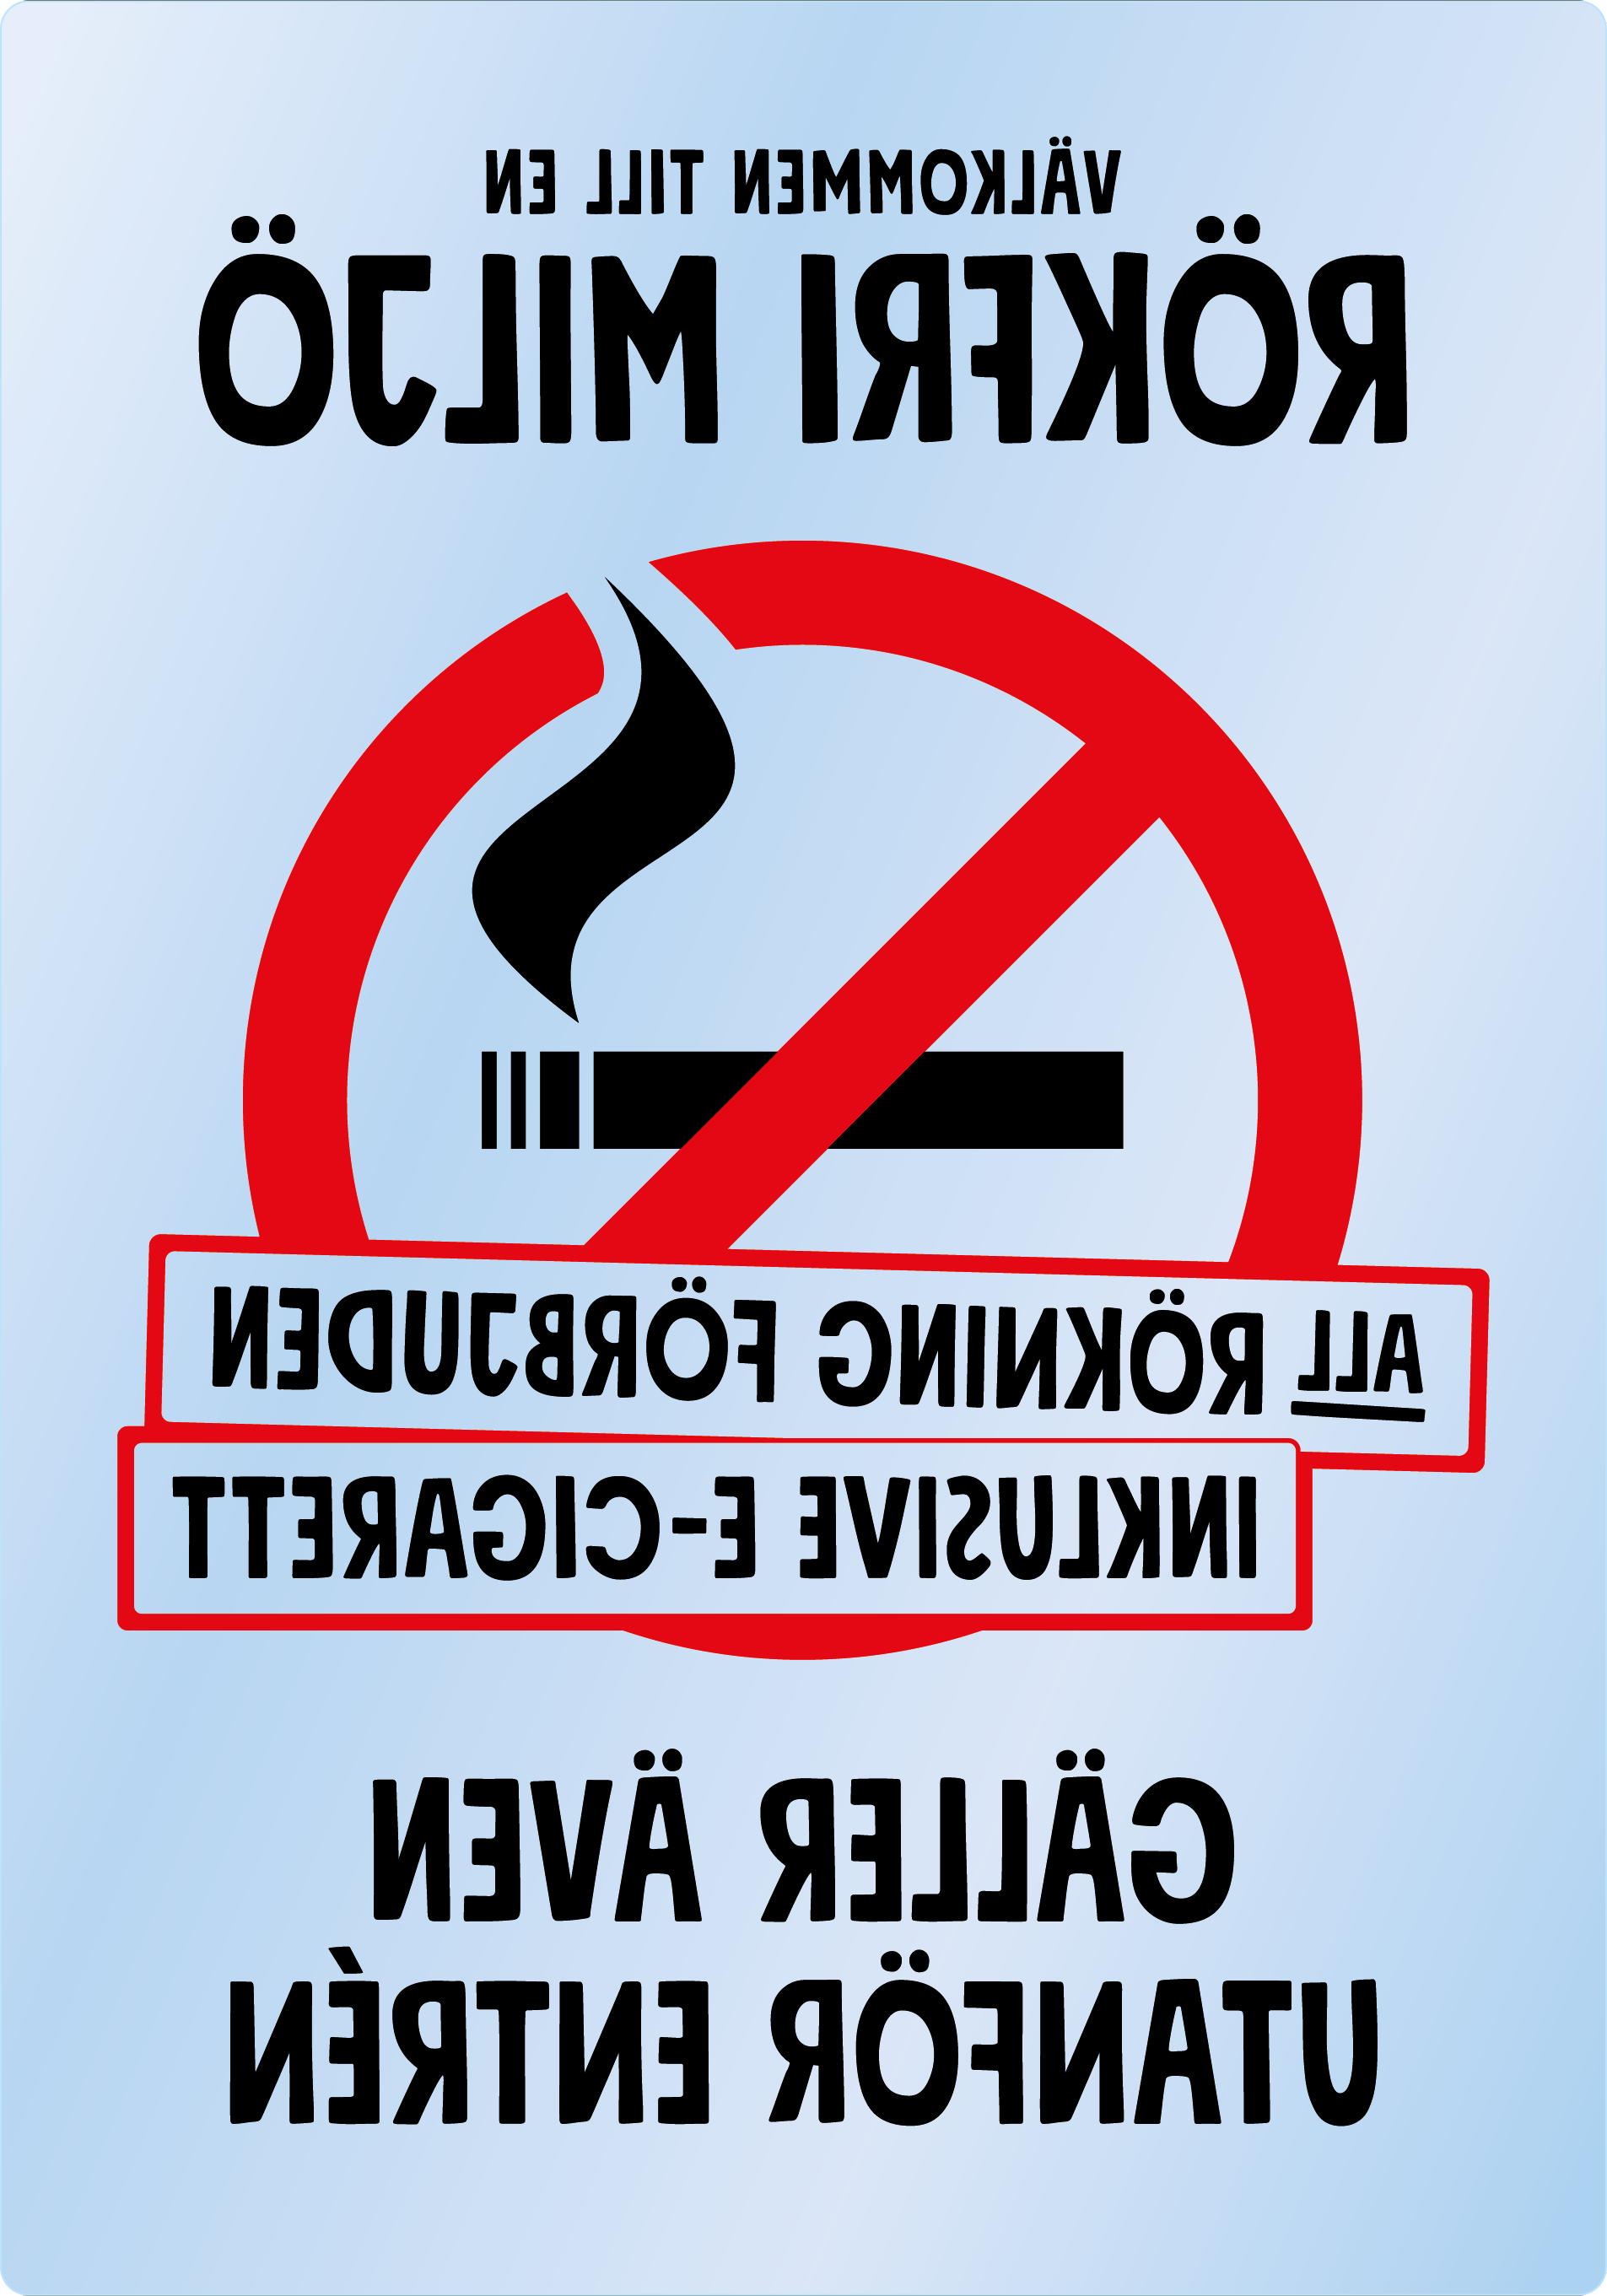 Bild rökförbudsskylt 43A12: Röd+Svart / Transparent